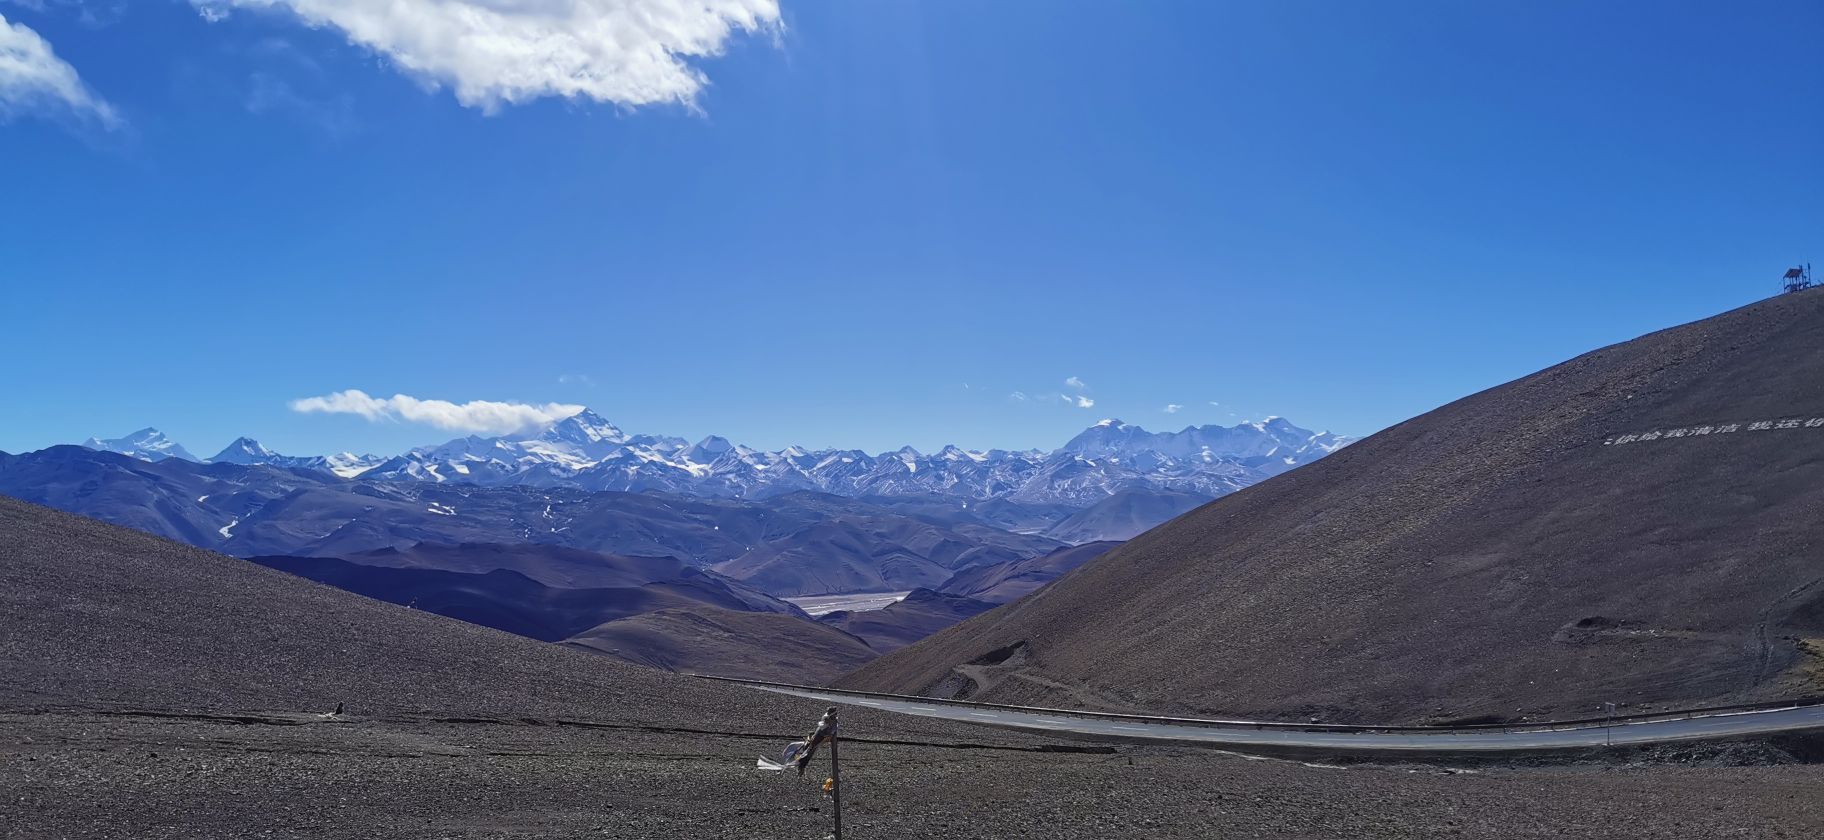 珠穆朗玛峰观景台台